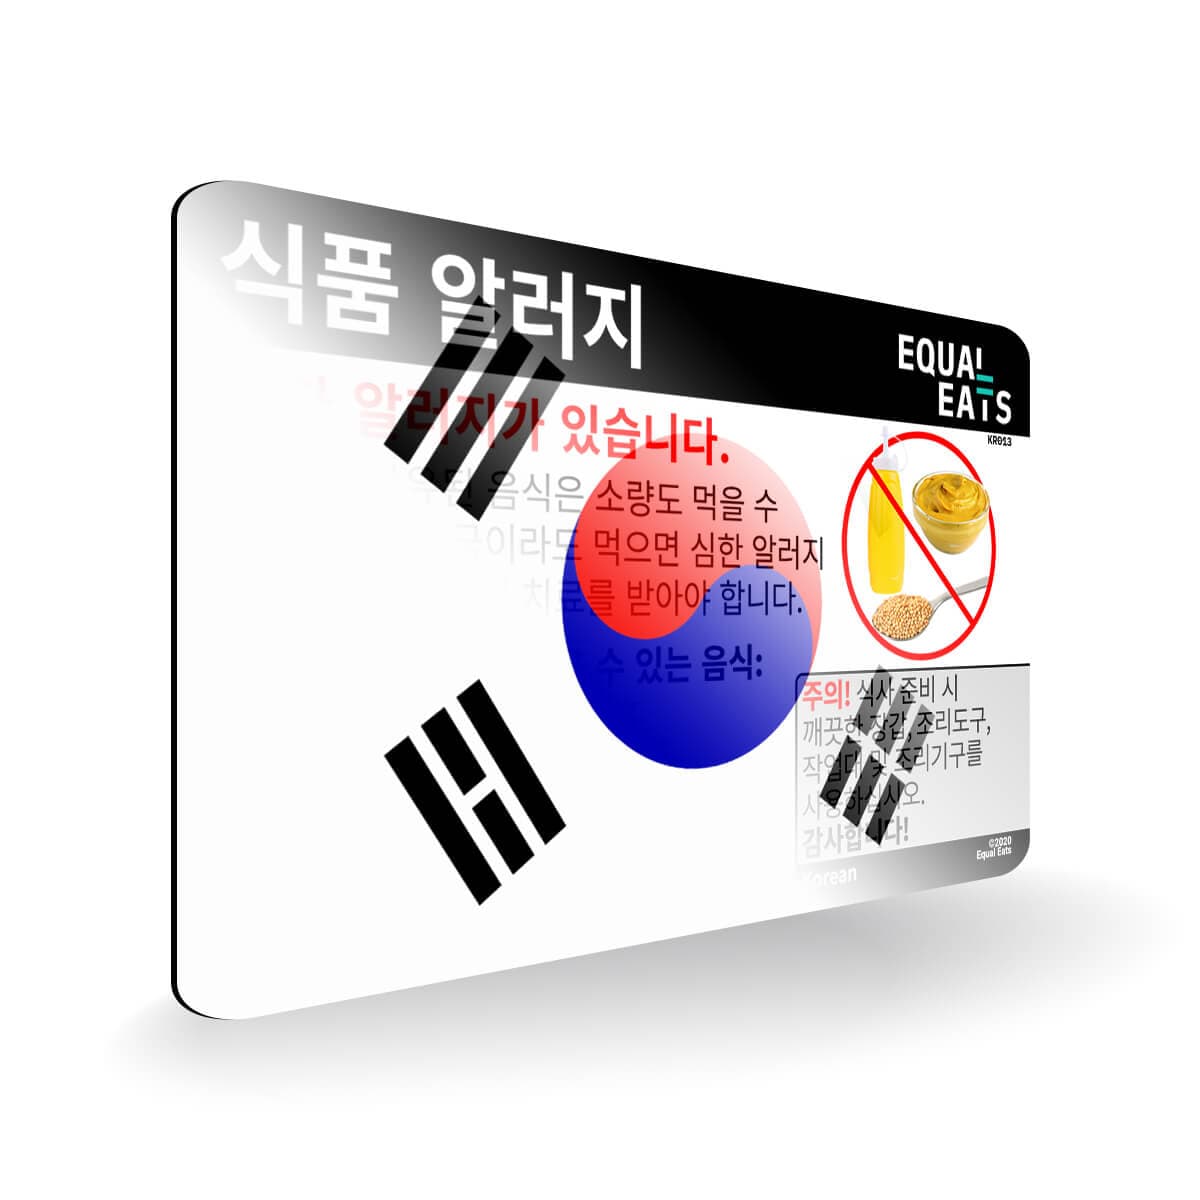 Mustard Allergy in Korean. Mustard Allergy Card for Korea